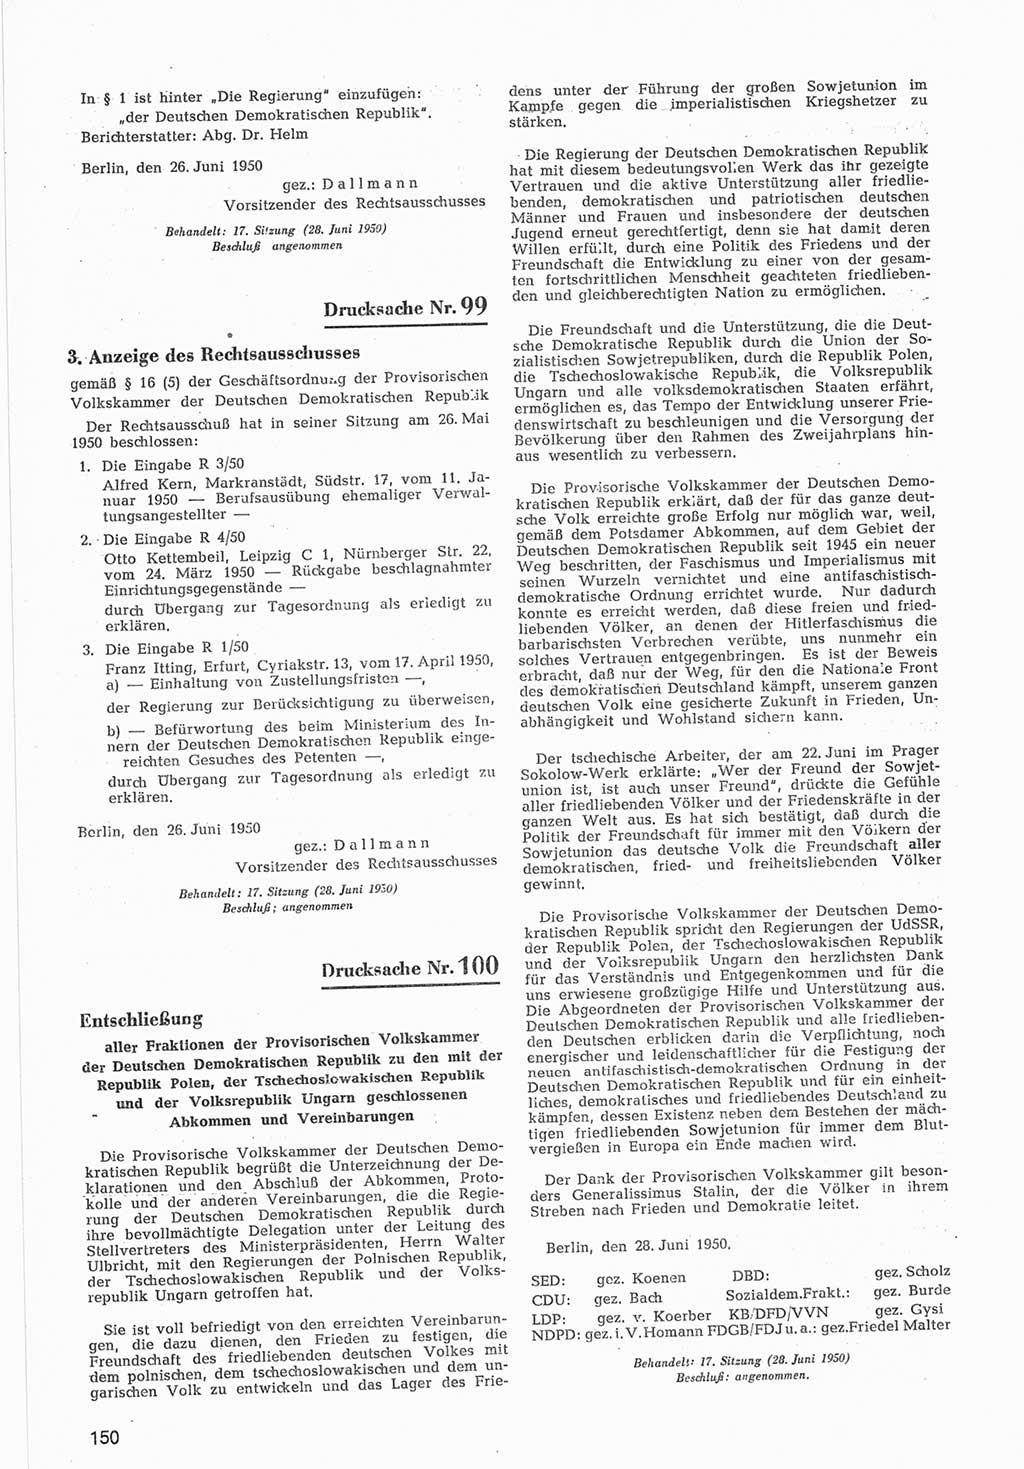 Provisorische Volkskammer (VK) der Deutschen Demokratischen Republik (DDR) 1949-1950, Dokument 752 (Prov. VK DDR 1949-1950, Dok. 752)